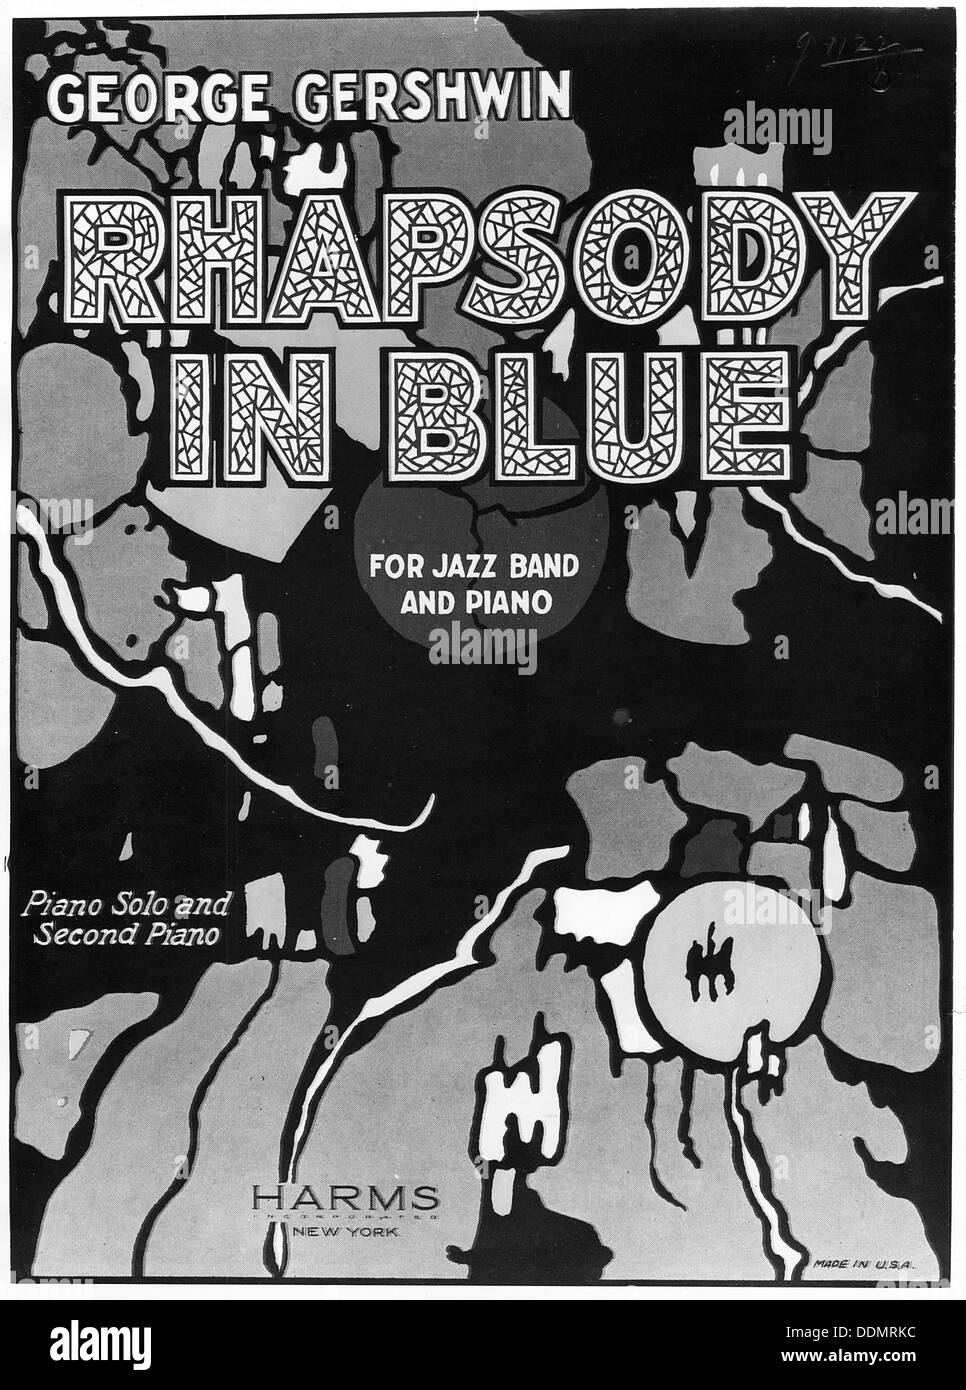 Rhapsody in blue de George Gershwin, 1924. Artista: Desconocido Foto de stock